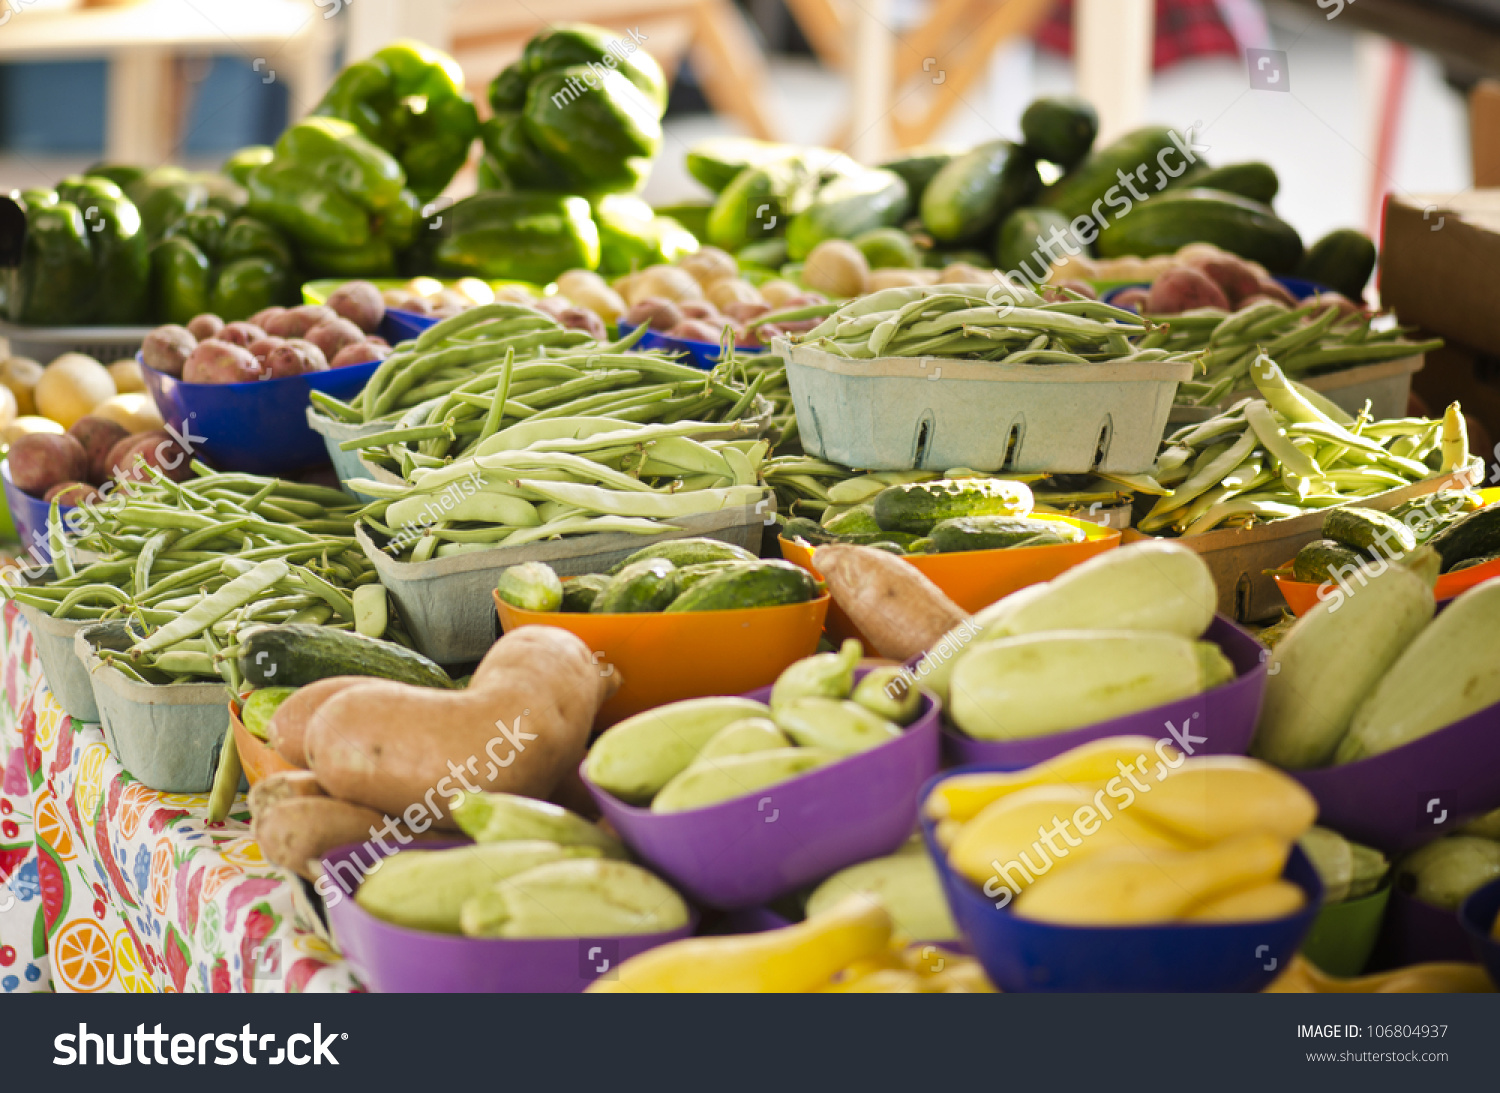 各种健康的蔬菜一个露天农贸市场有豆类,土豆,南瓜,黄瓜,辣椒等等